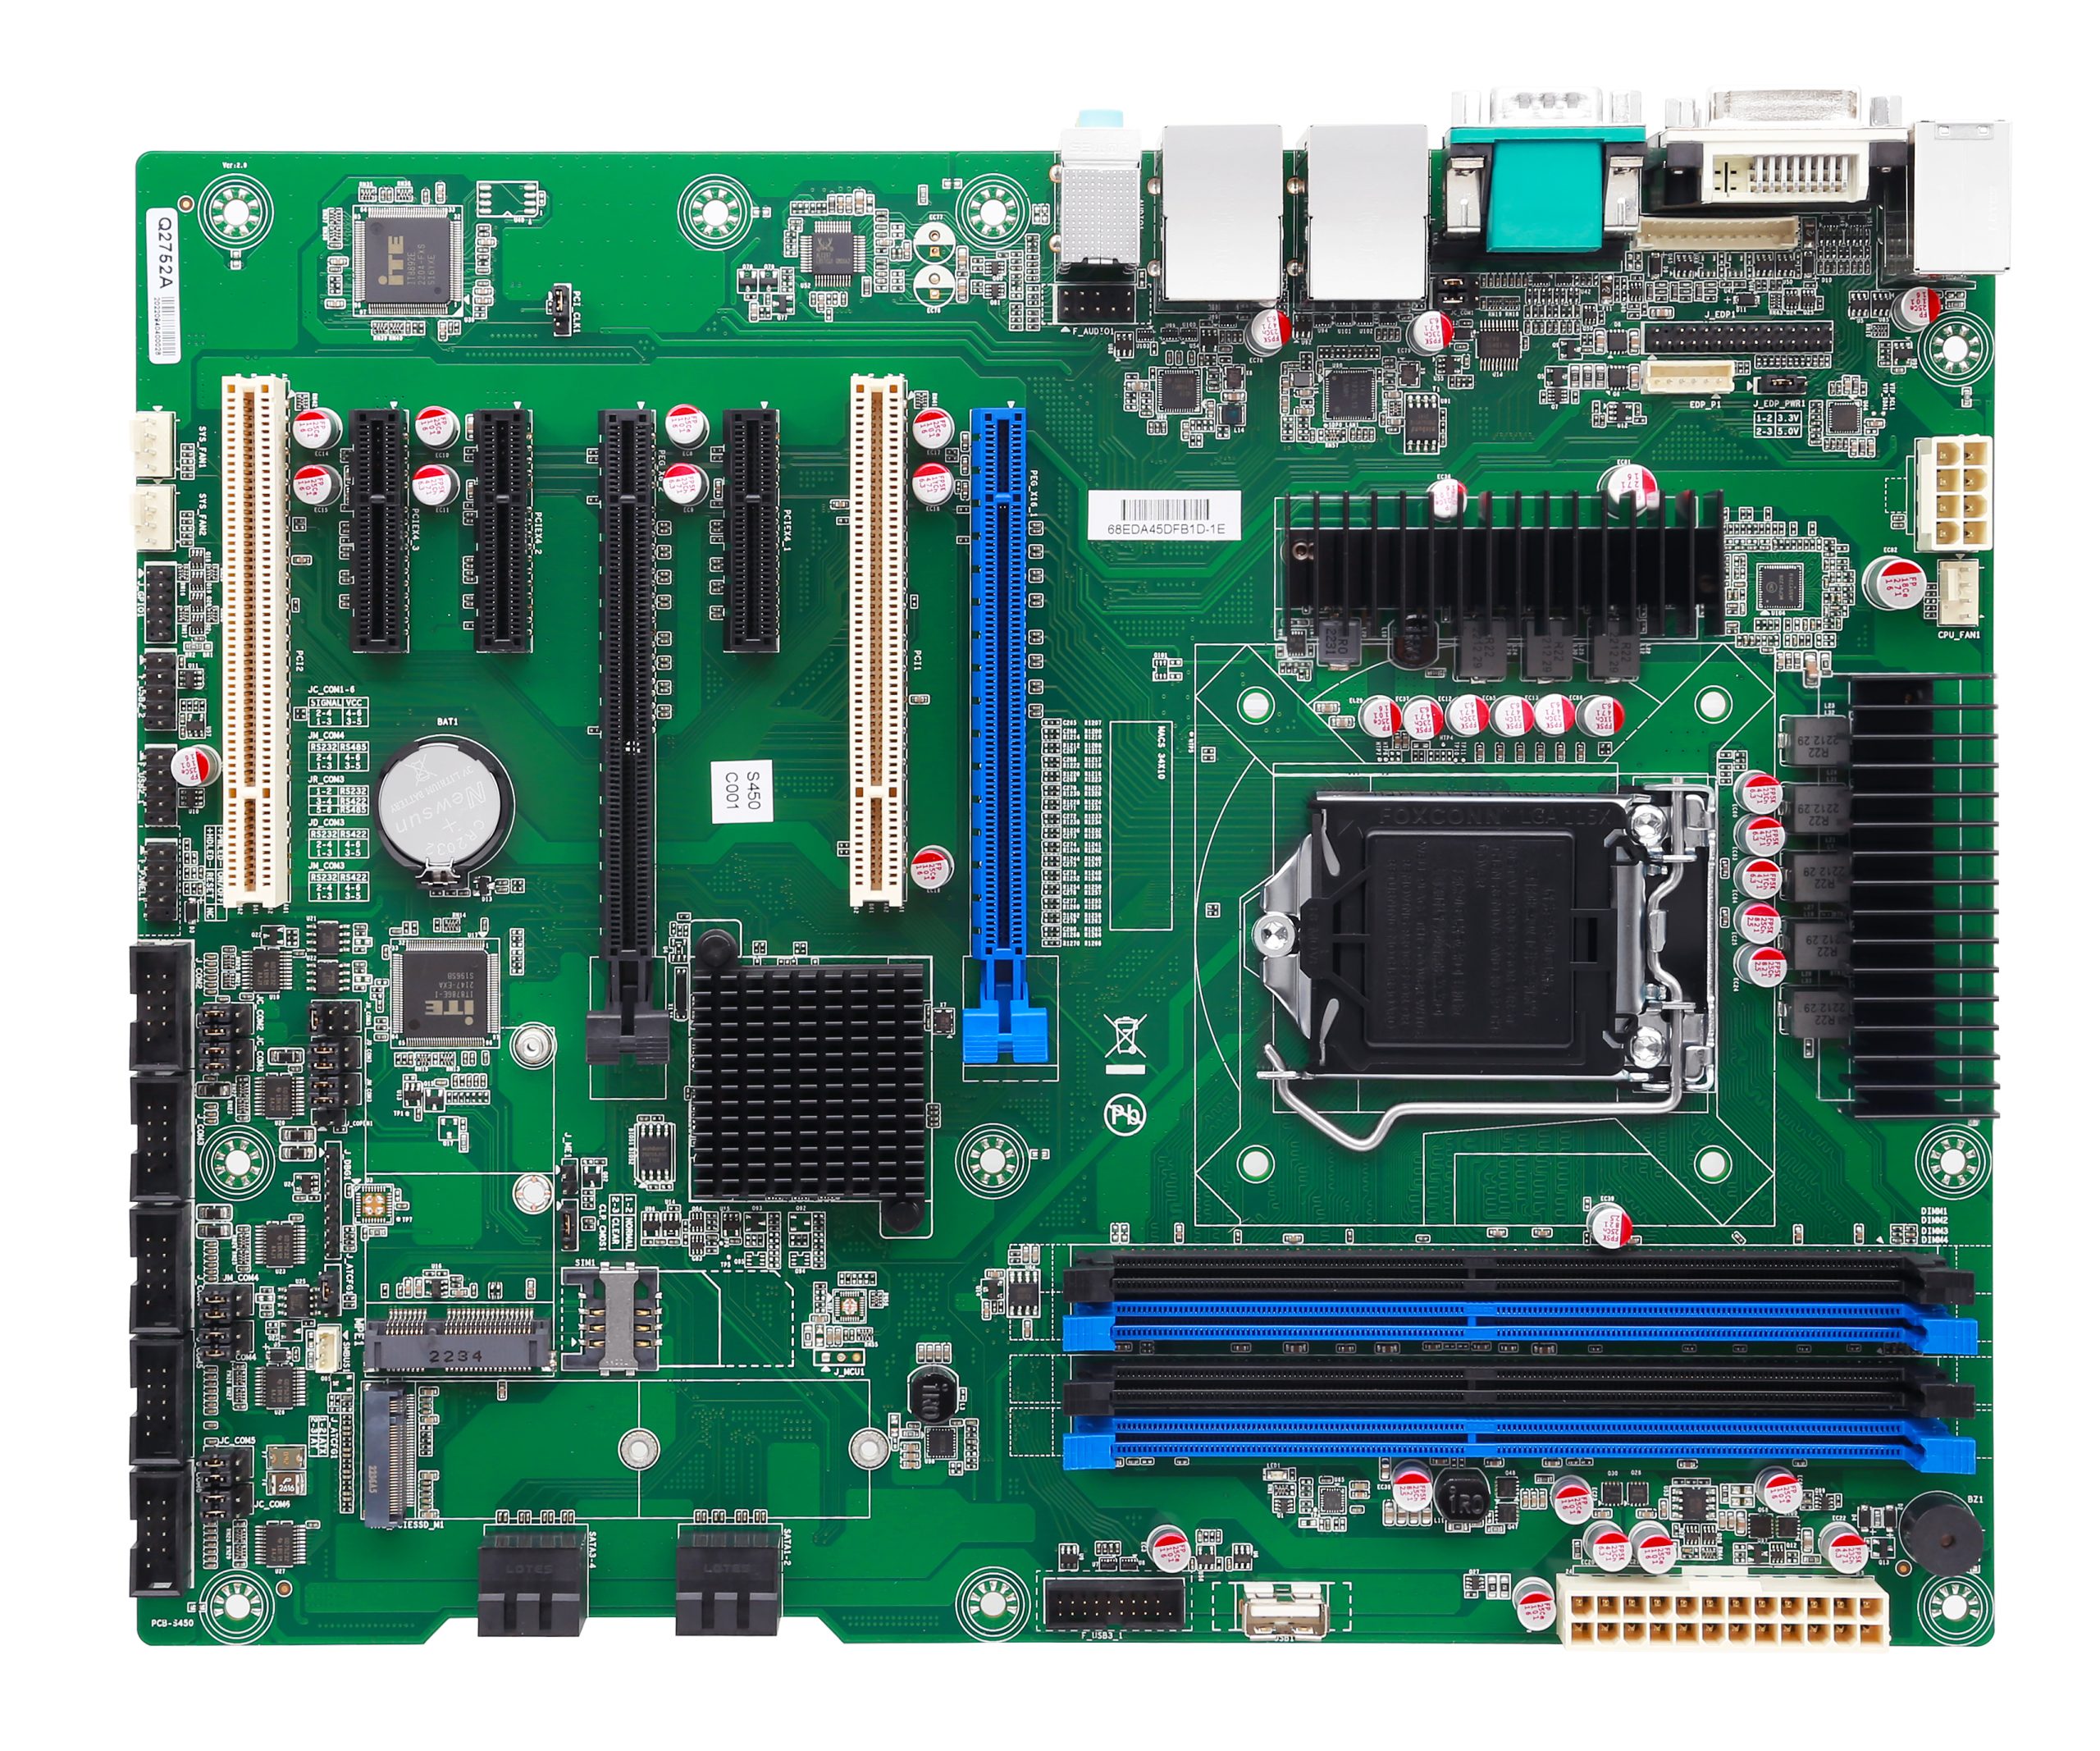 DMB-AQ270 Industrial Motherboard with Intel® 6/7/8/9th Gen Core™ i3/i5/i7/i9 CPU, Q270 Chipset, 2× PCIeX16, 3× PCIeX4, 2× PCI, 6× COM, 13× USB, 2× LAN